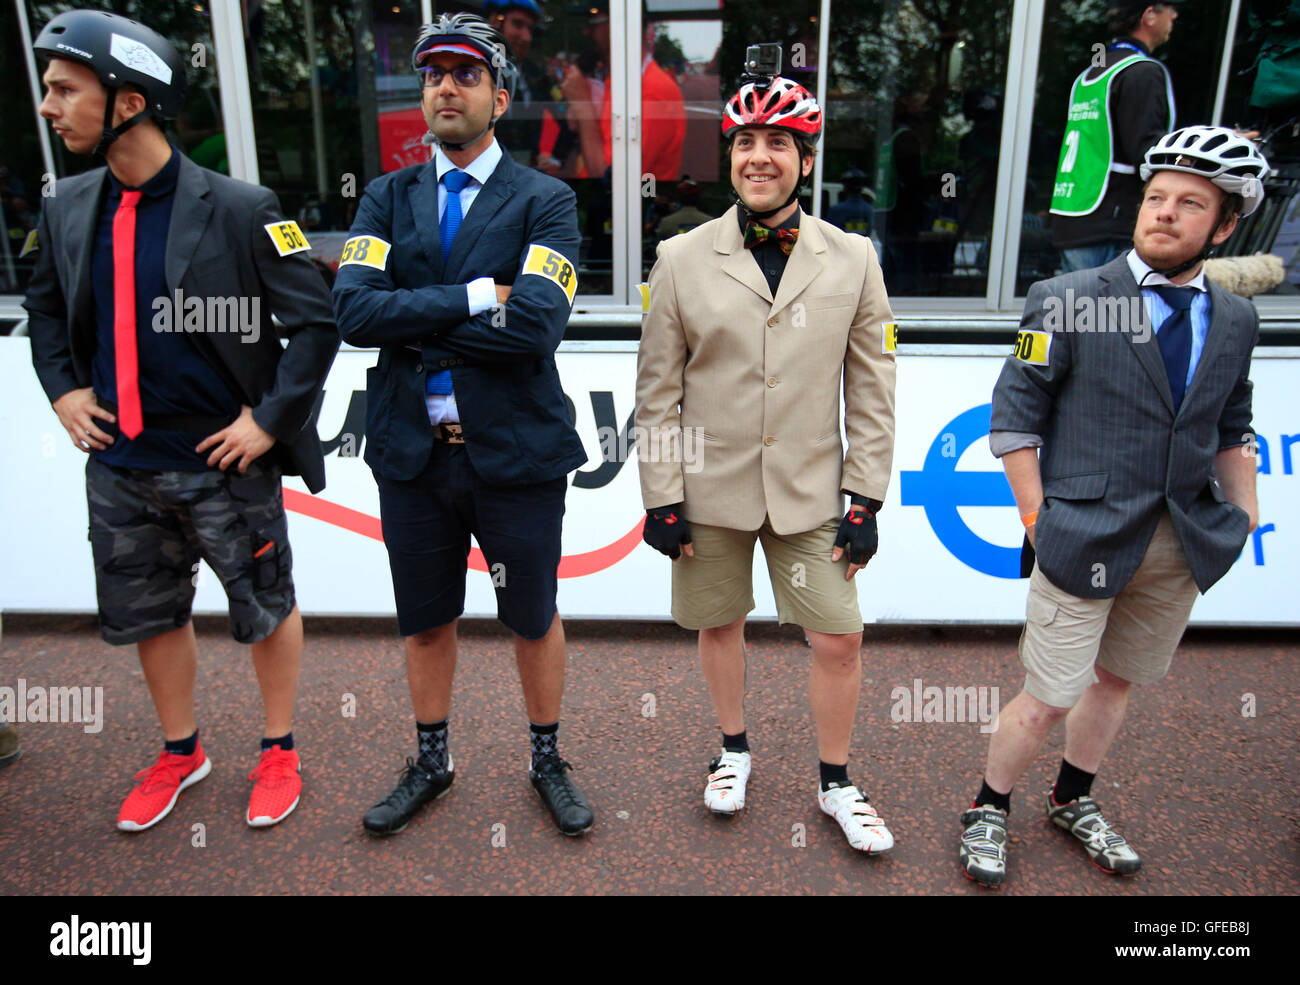 Radfahrer tragen Anzug Jacken und Krawatten bereiten im jährlichen Brompton World Championship Finale im Rahmen des aufsichtlichen RideLondon Festival des Radsports auf The Mall, London teilnehmen. Stockfoto